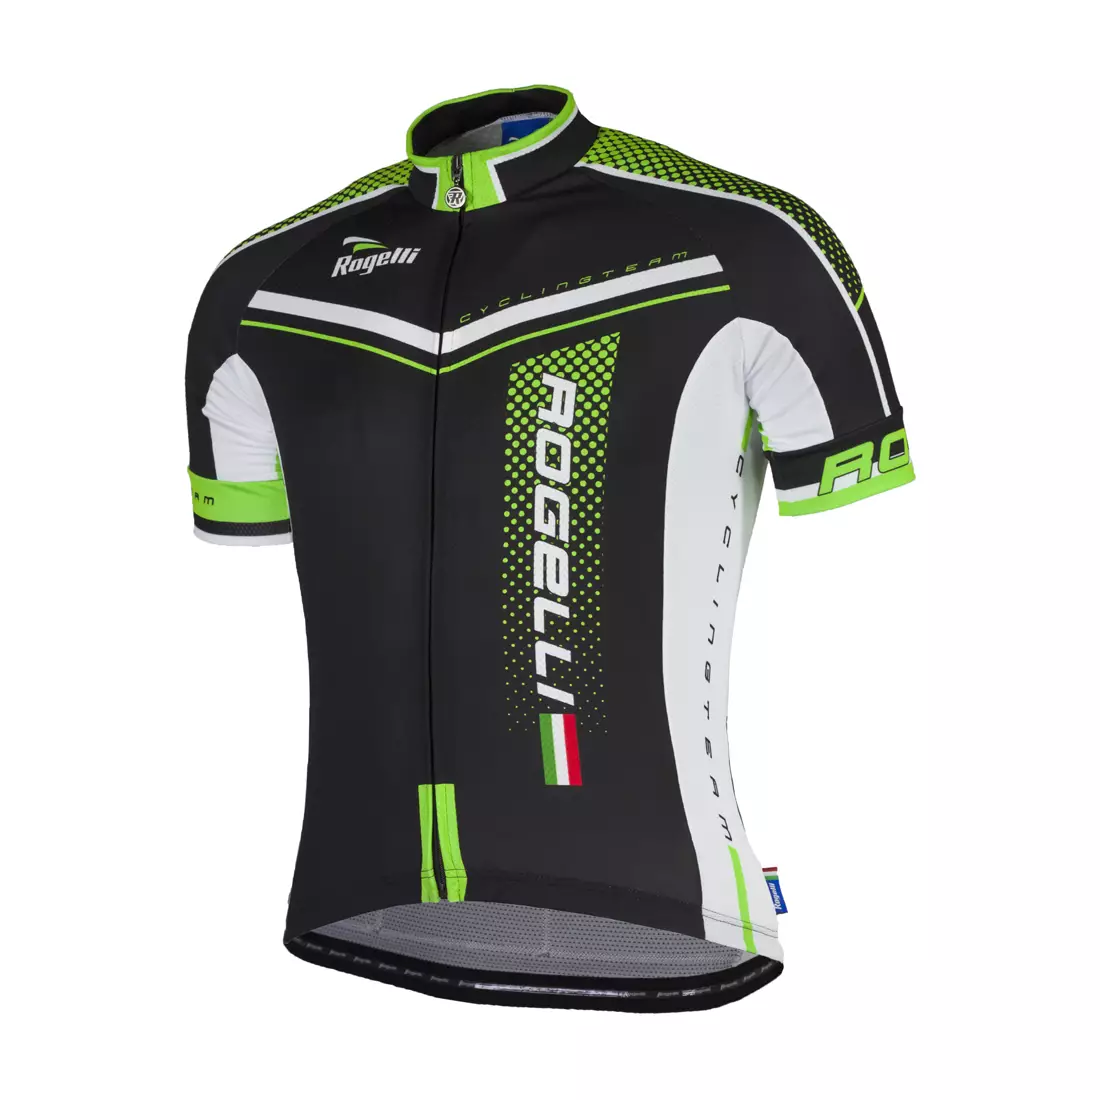 ROGELLI GARA MOSTRO - pánský cyklistický dres 001.240, černo-zelený